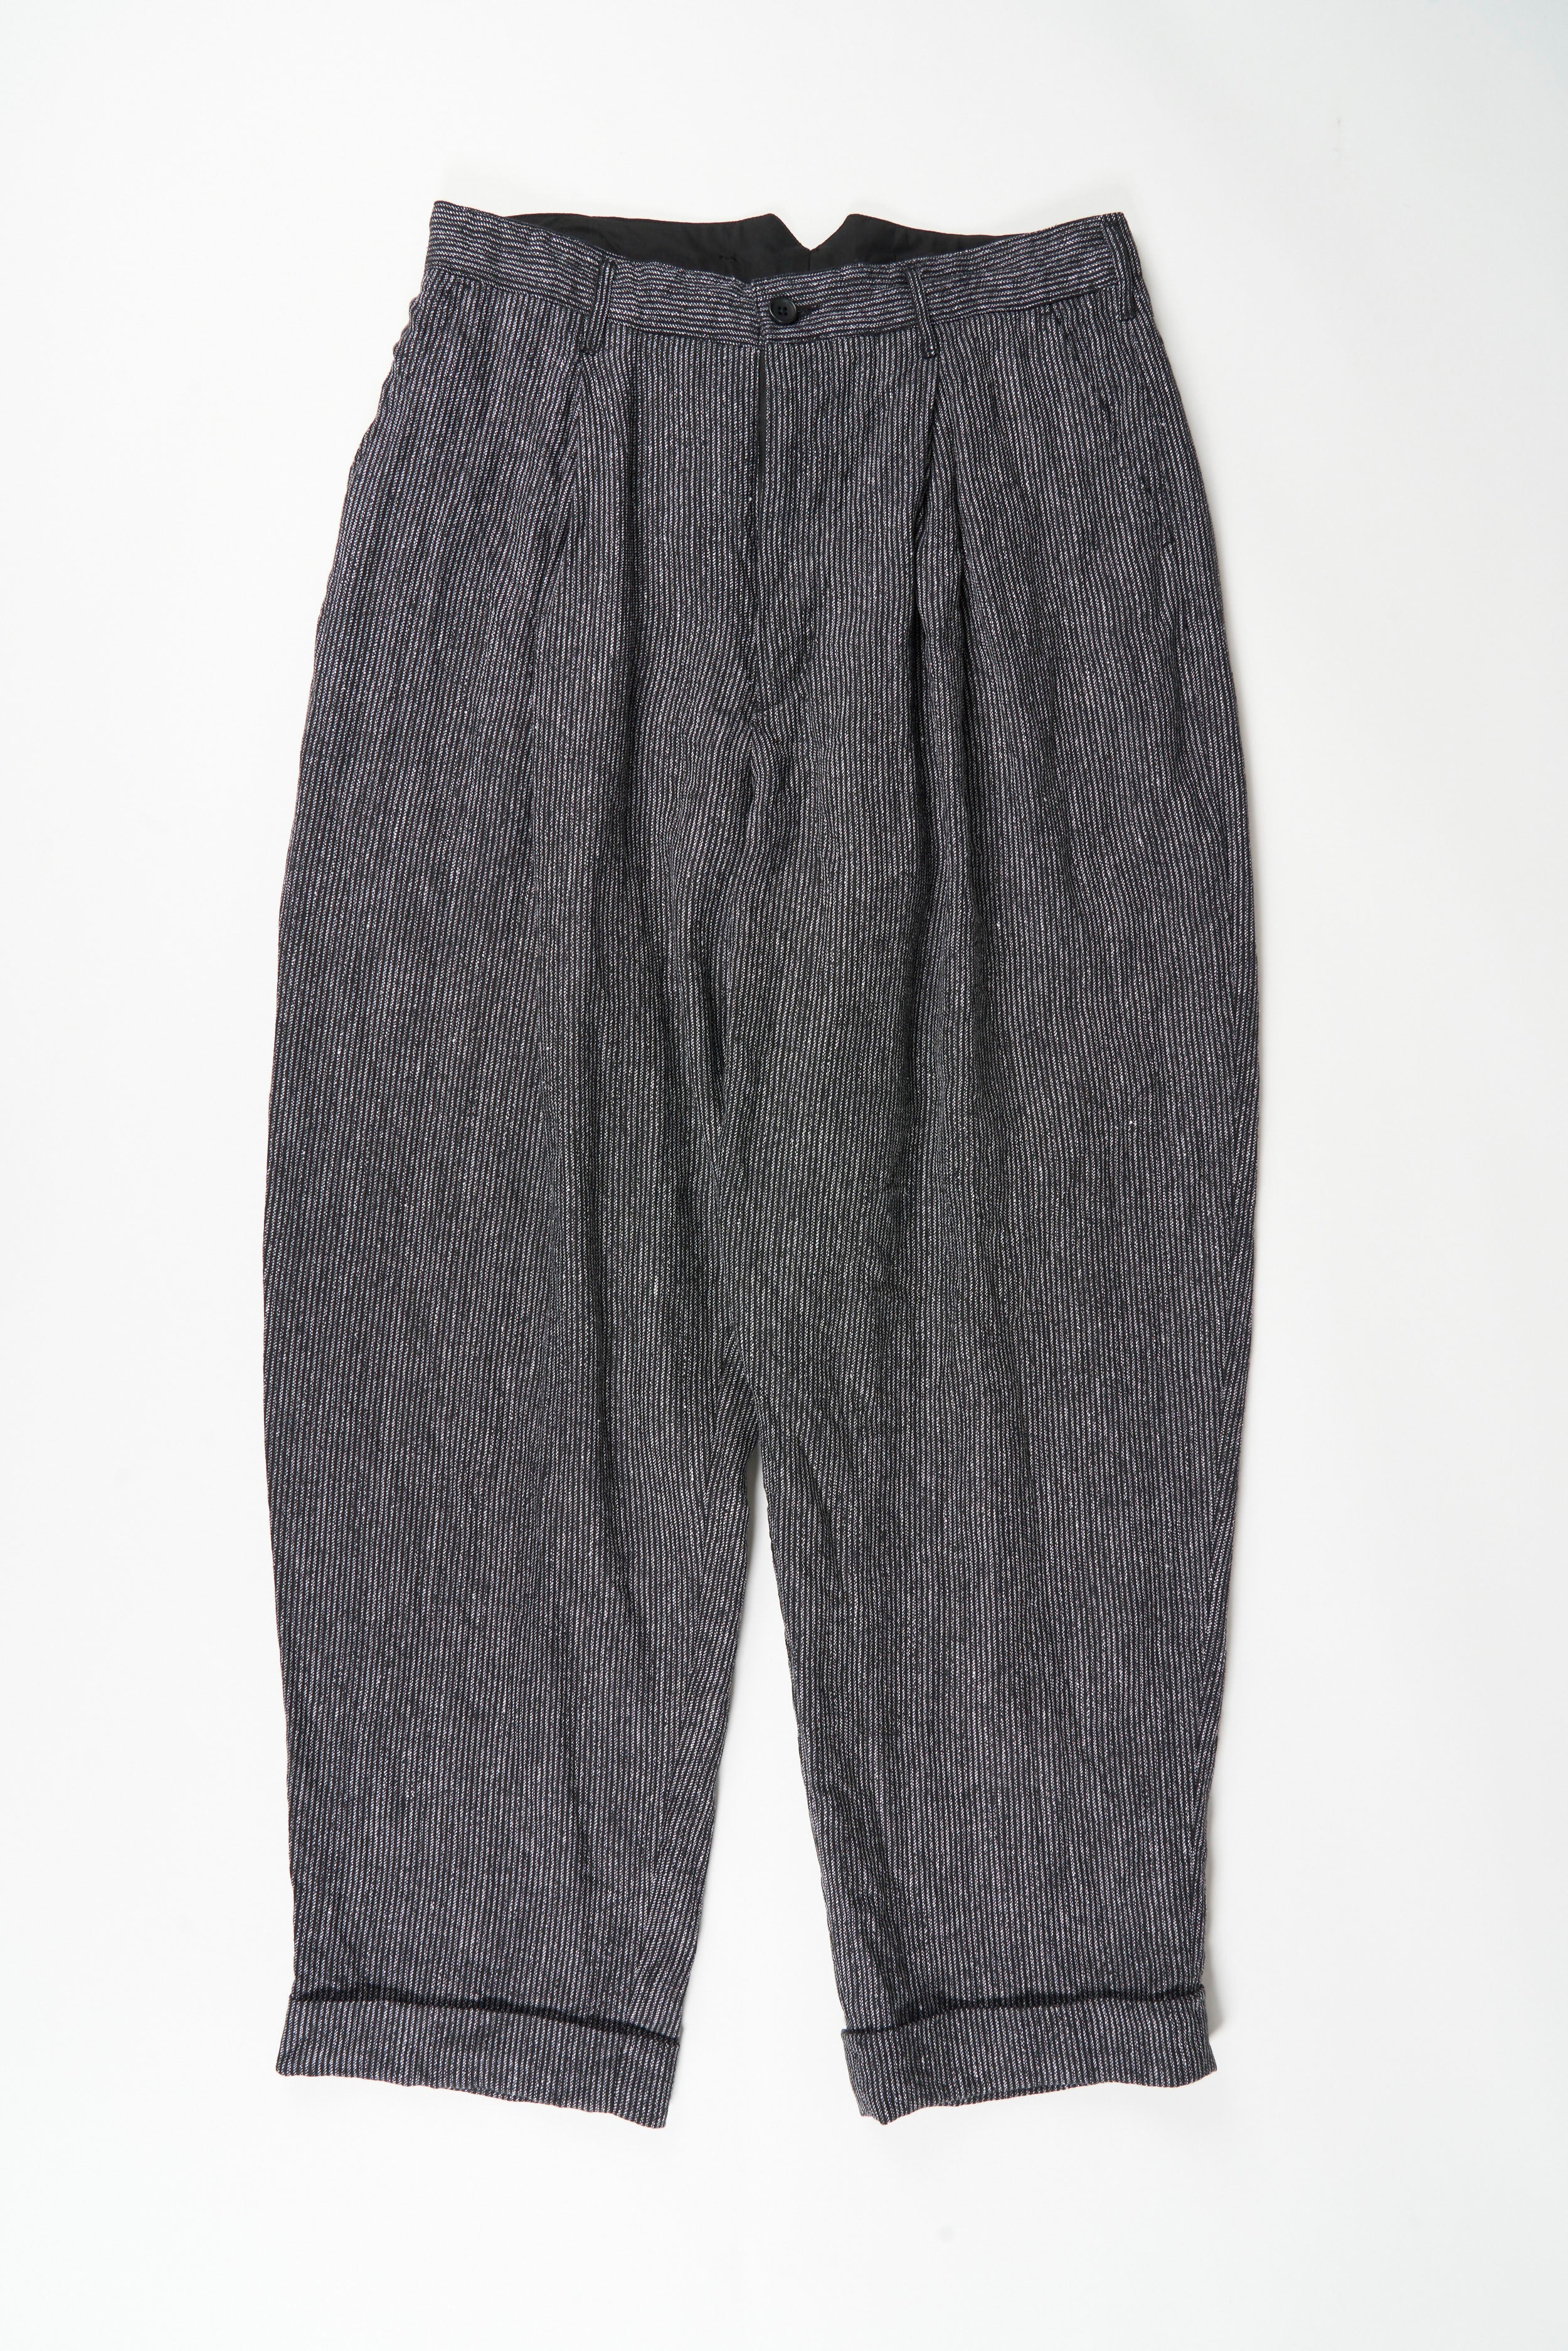 WP Pant - Black / Grey Linen Stripe